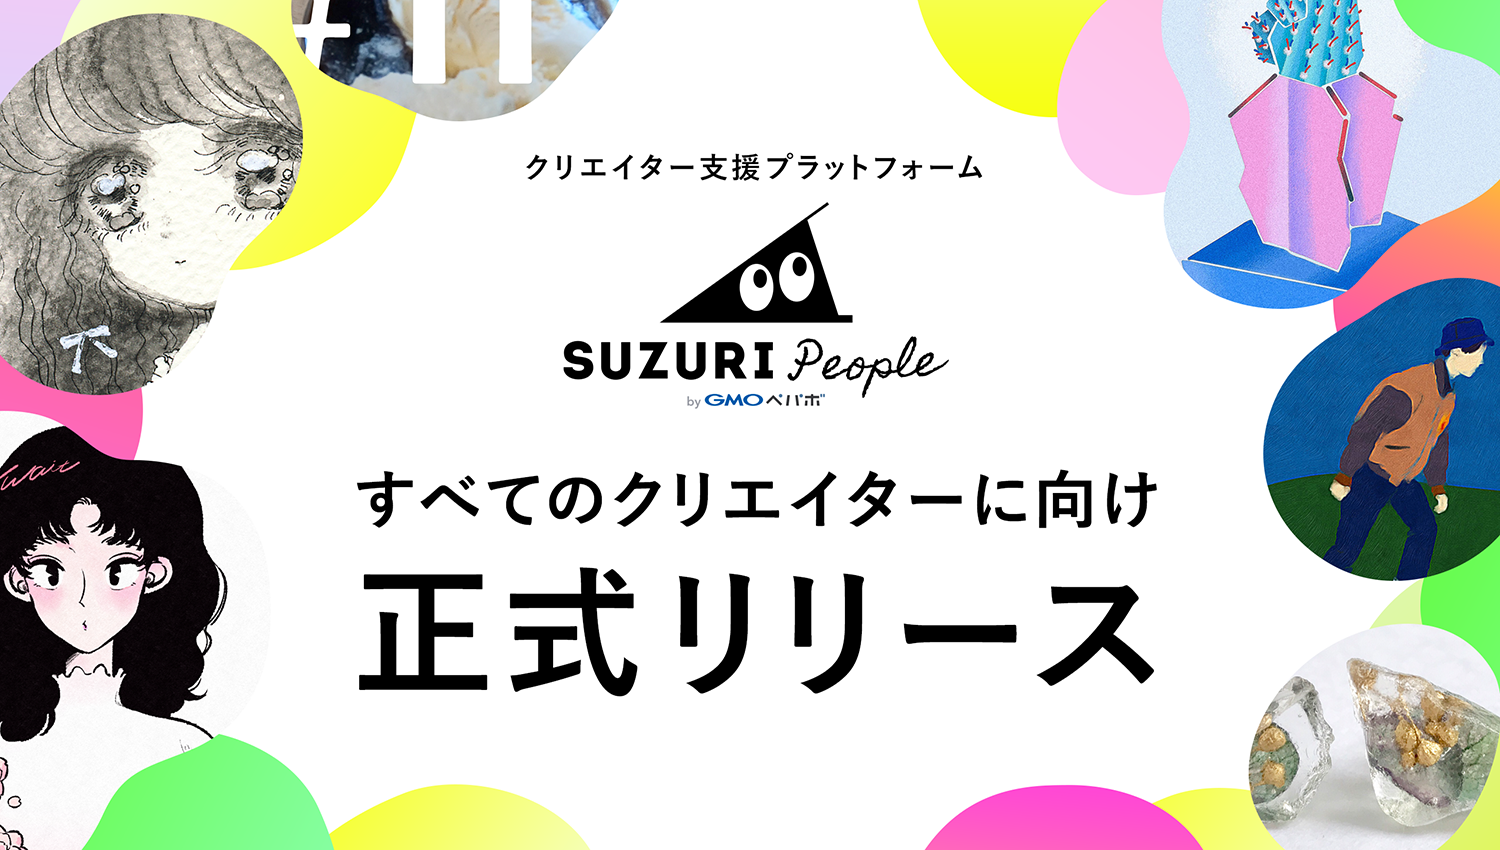 SUZURI People(スズリ ピープル) すべてのクリエイターに向け正式リリース